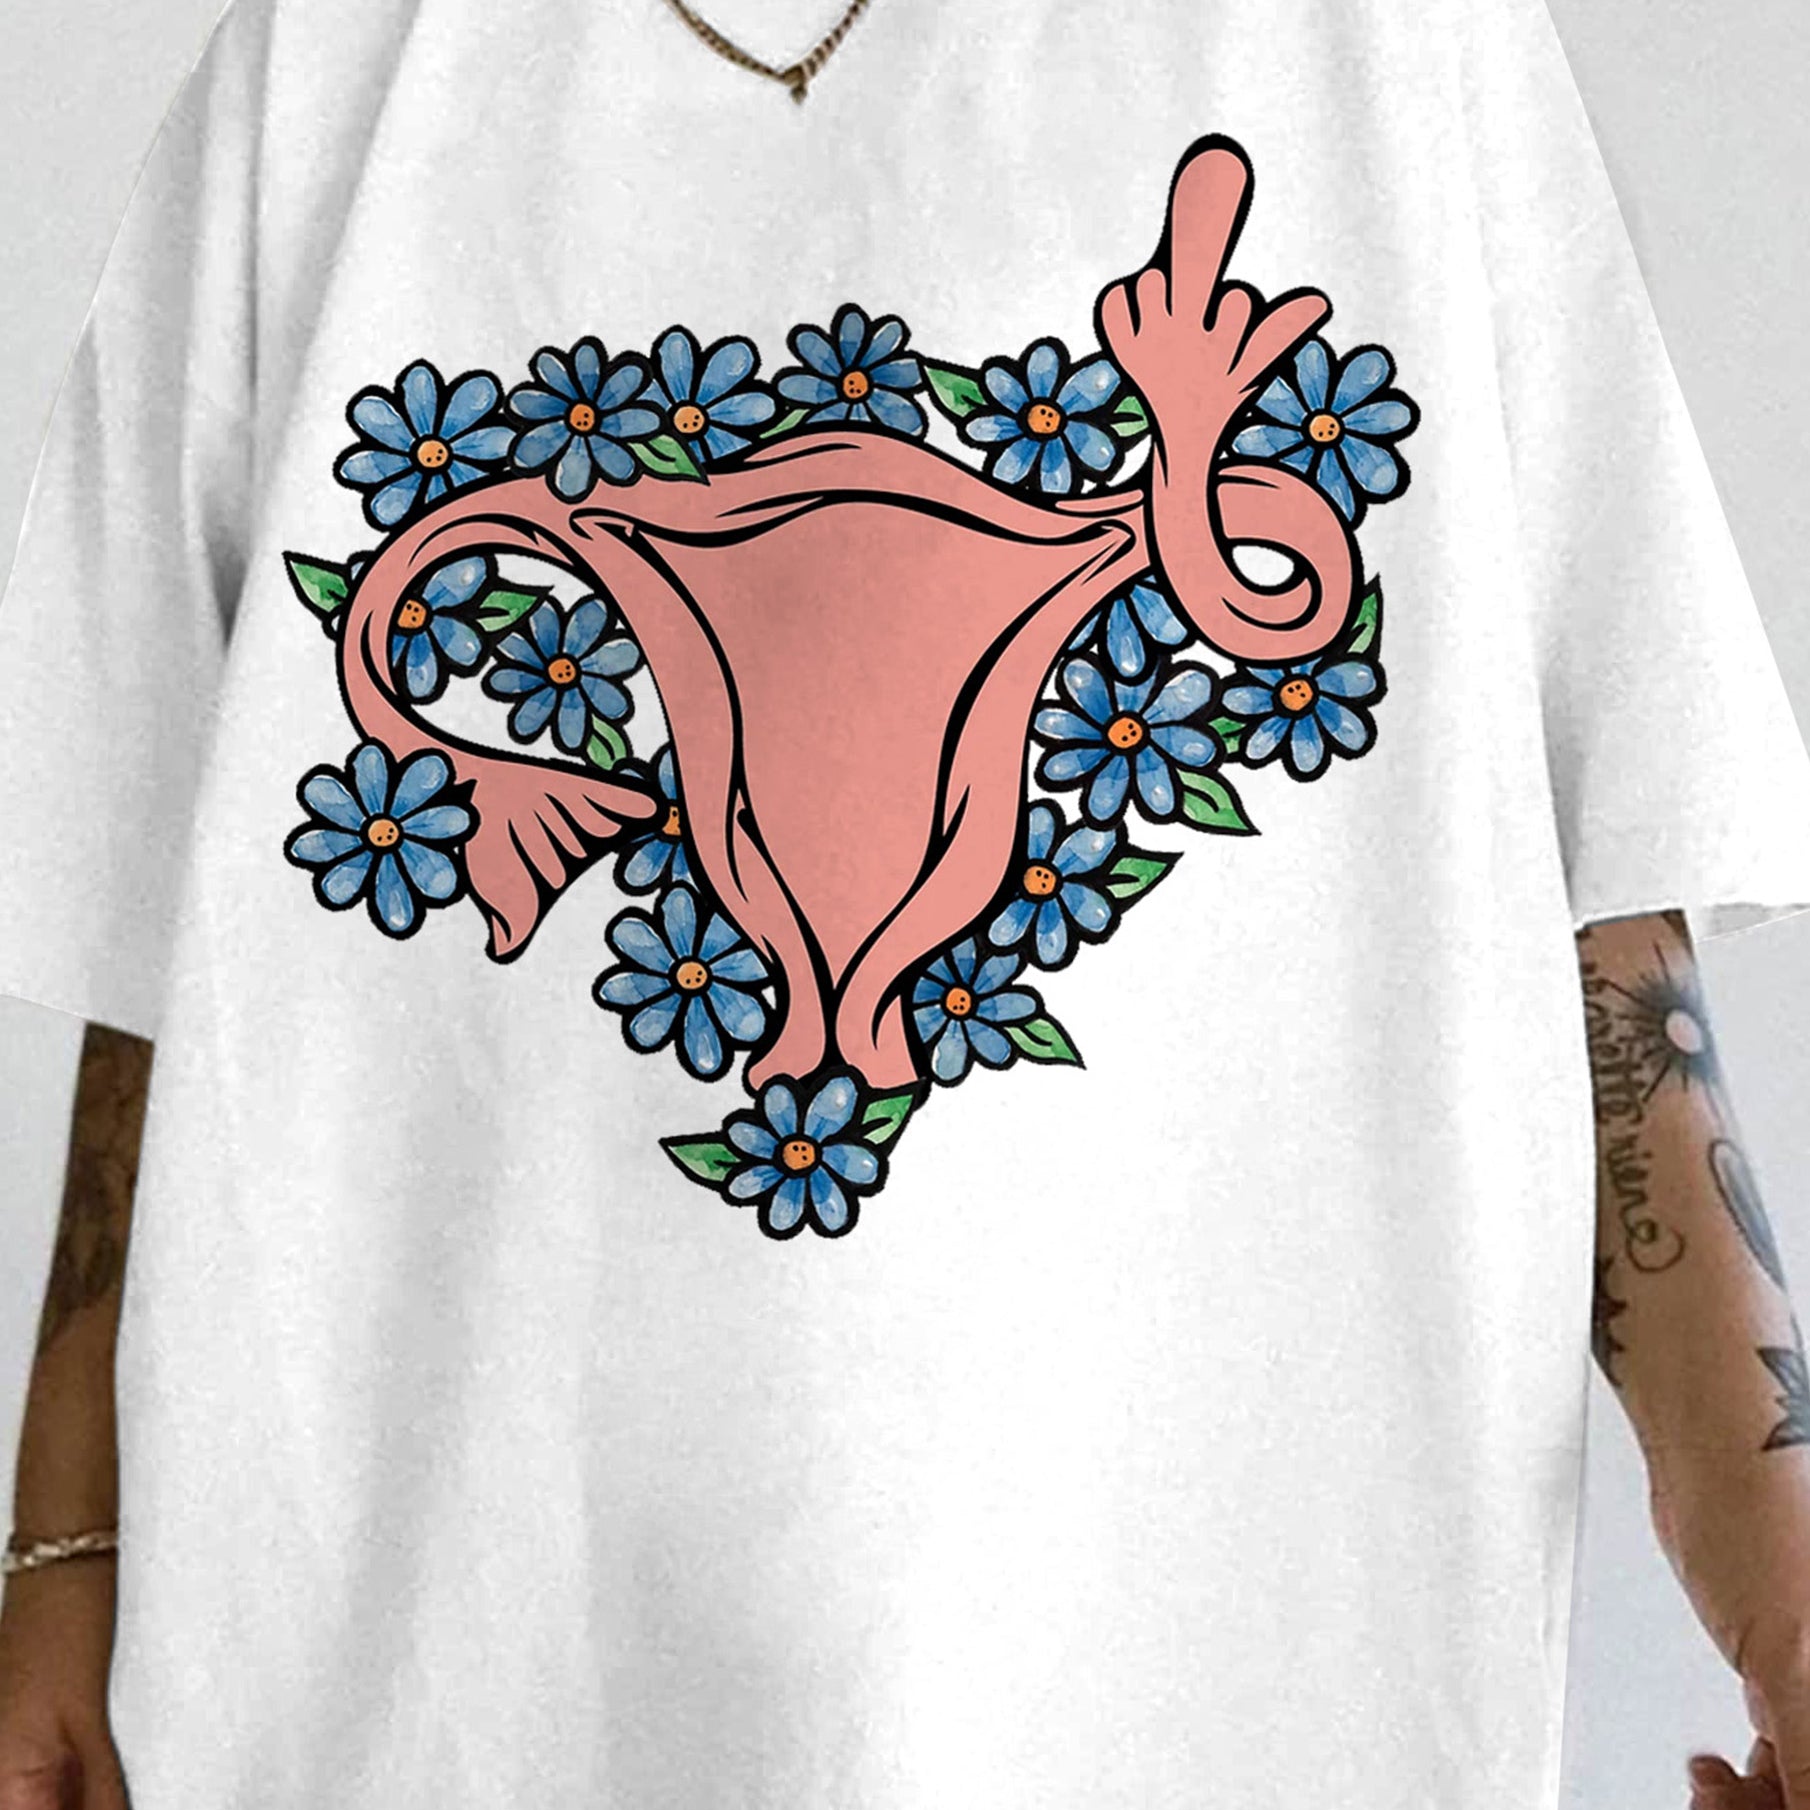 Middle Finger Uterus Pro choice Feminist Tee For Women